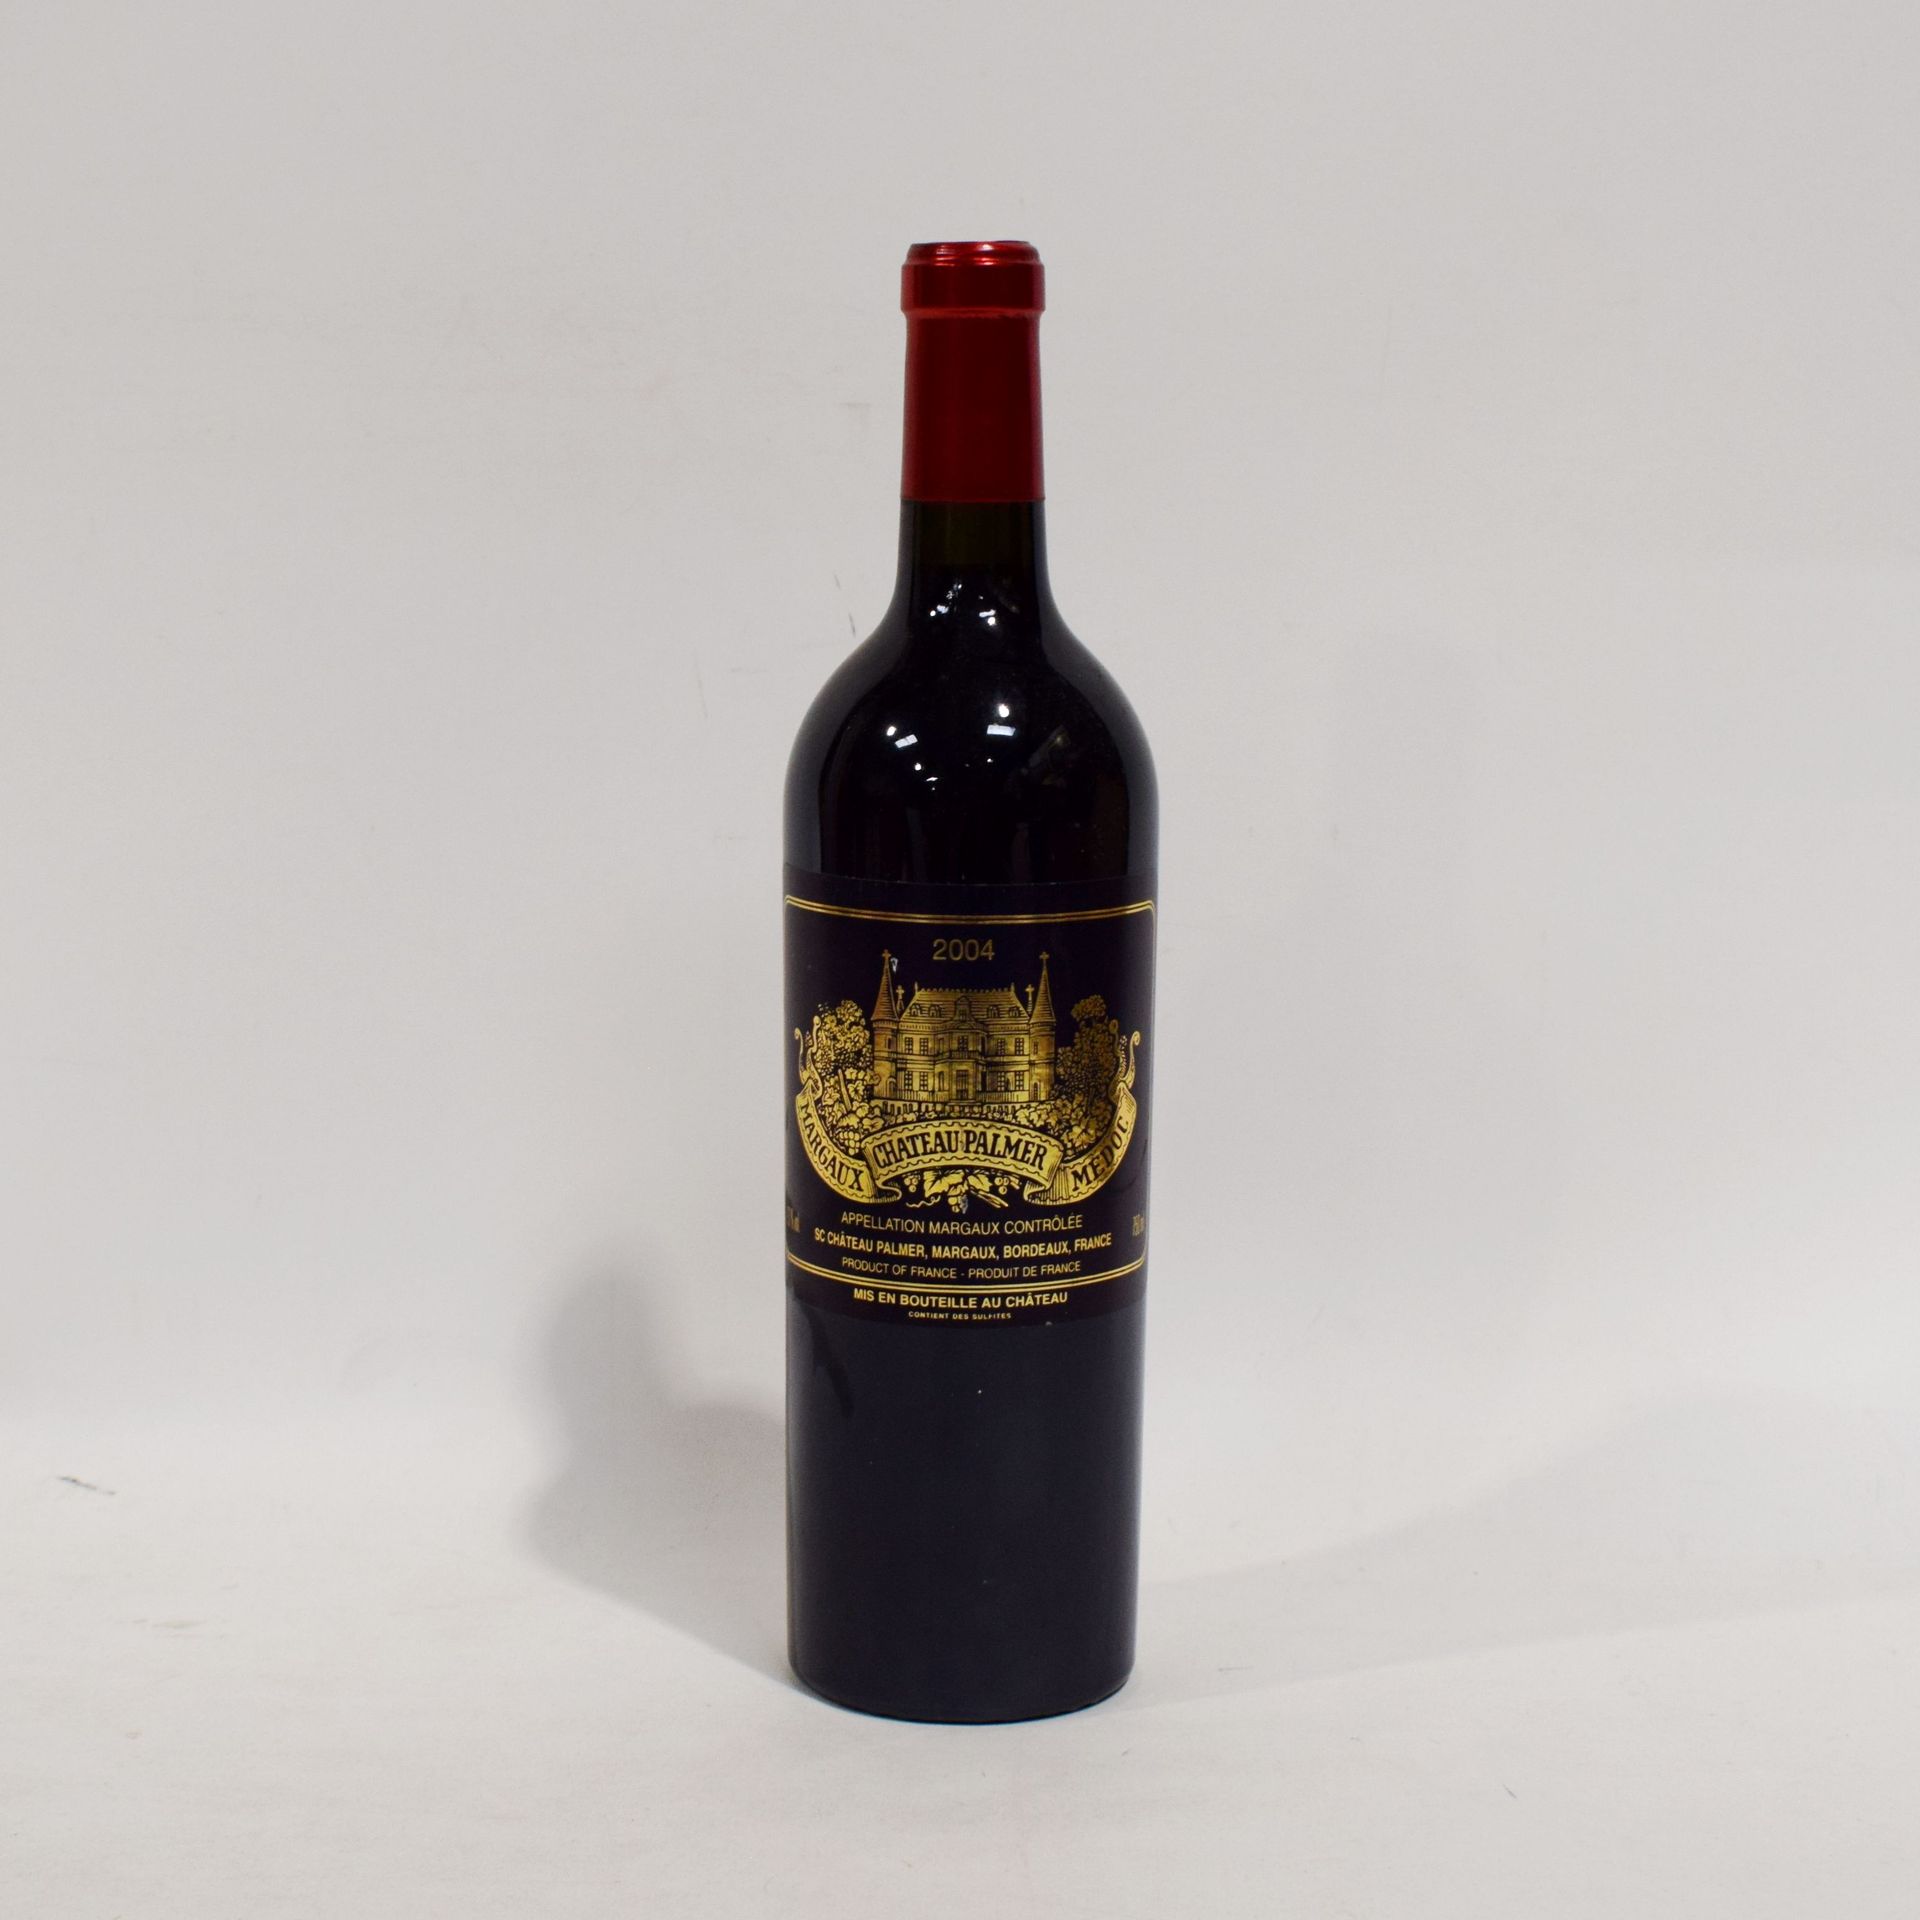 Null (MARGAUX)一瓶PALMER酒庄，玛歌产区三等奖，2004年份，良好等级